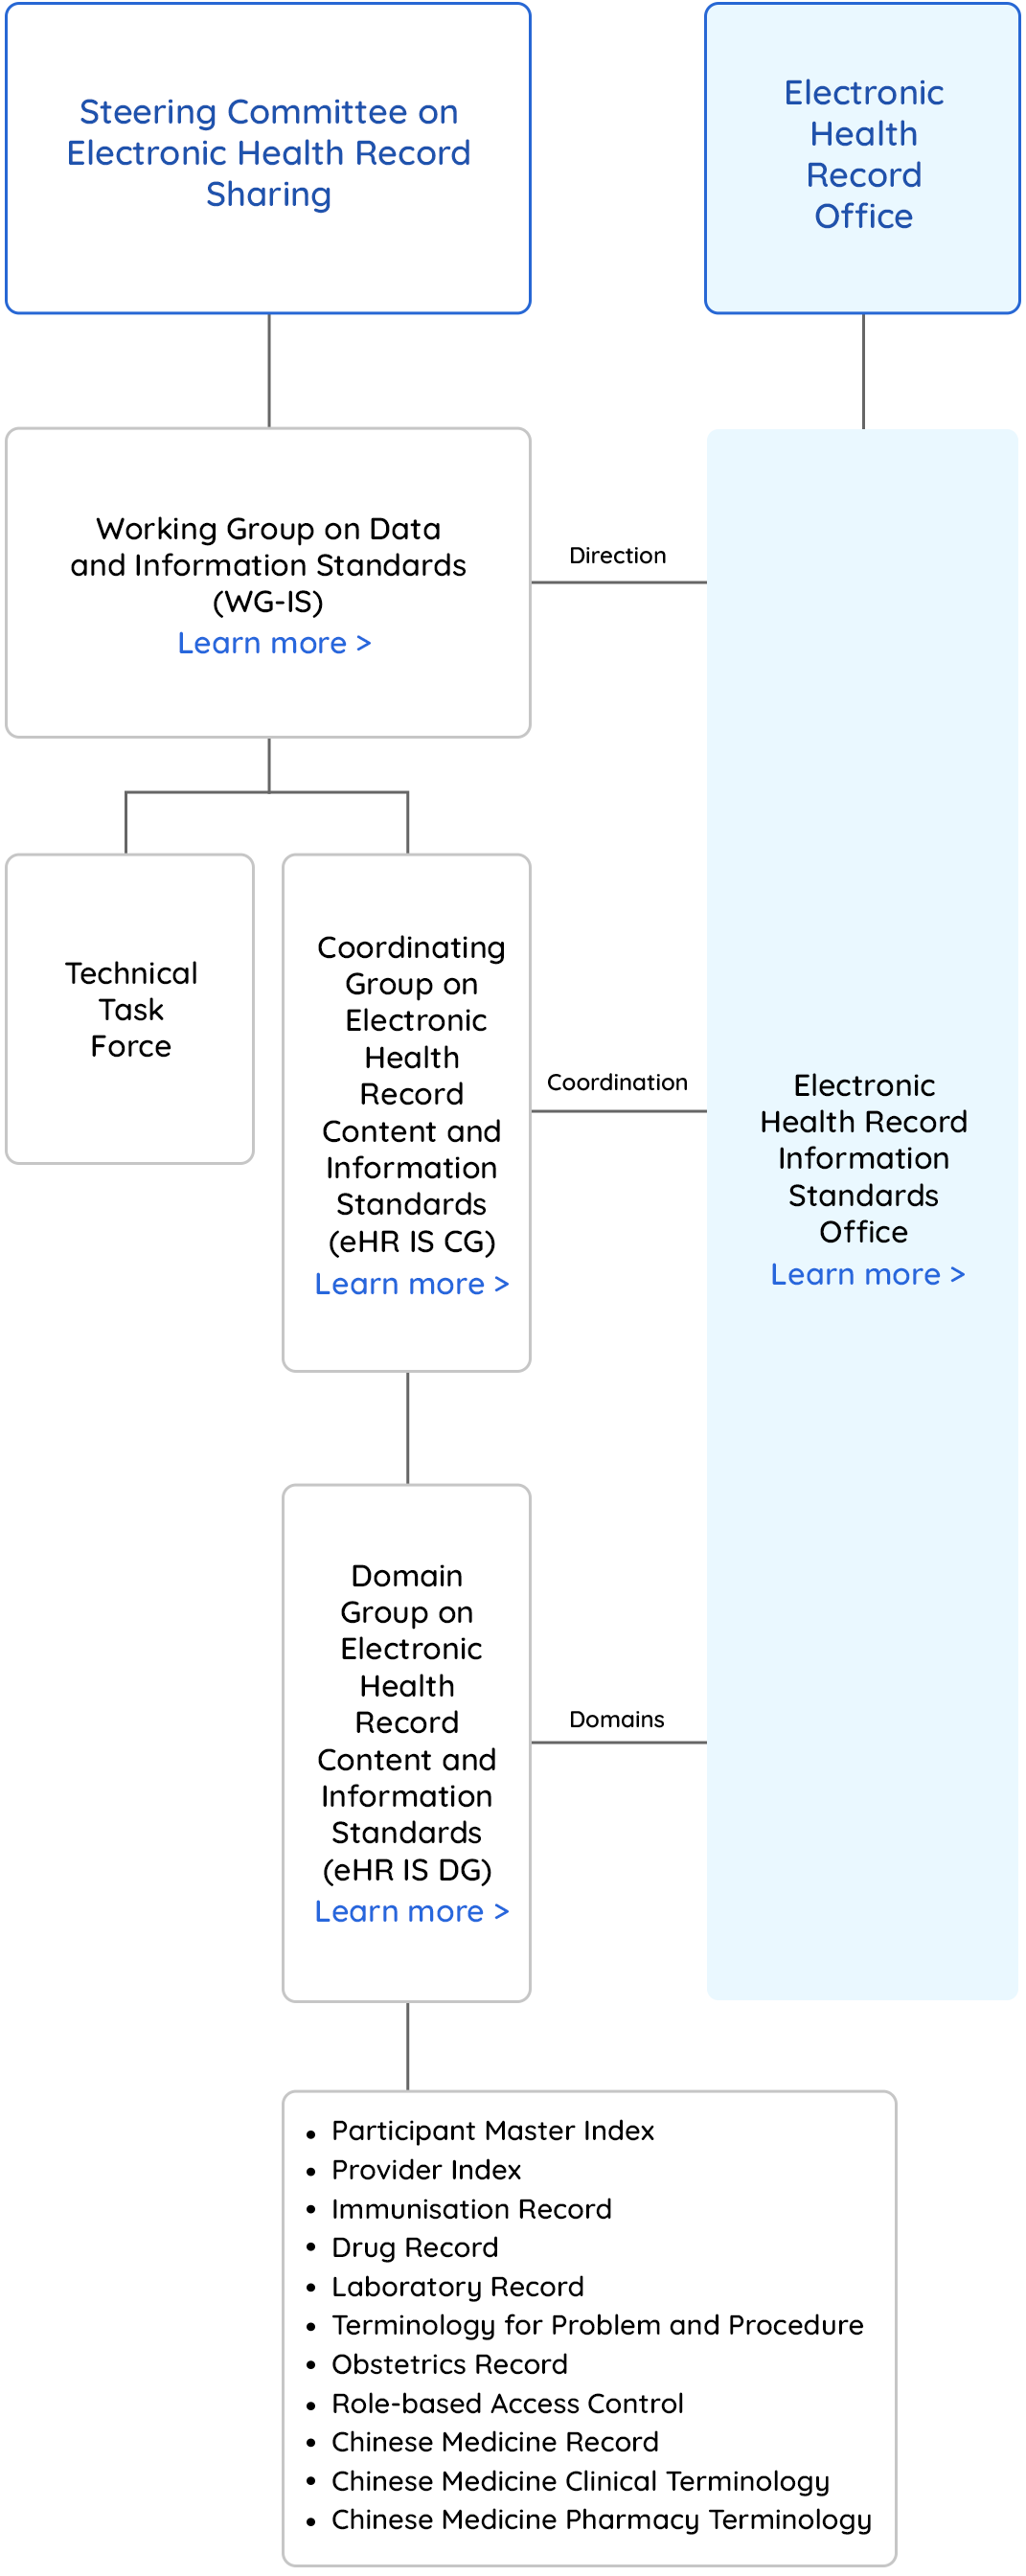 Organisation Structure of eHR Information Standards